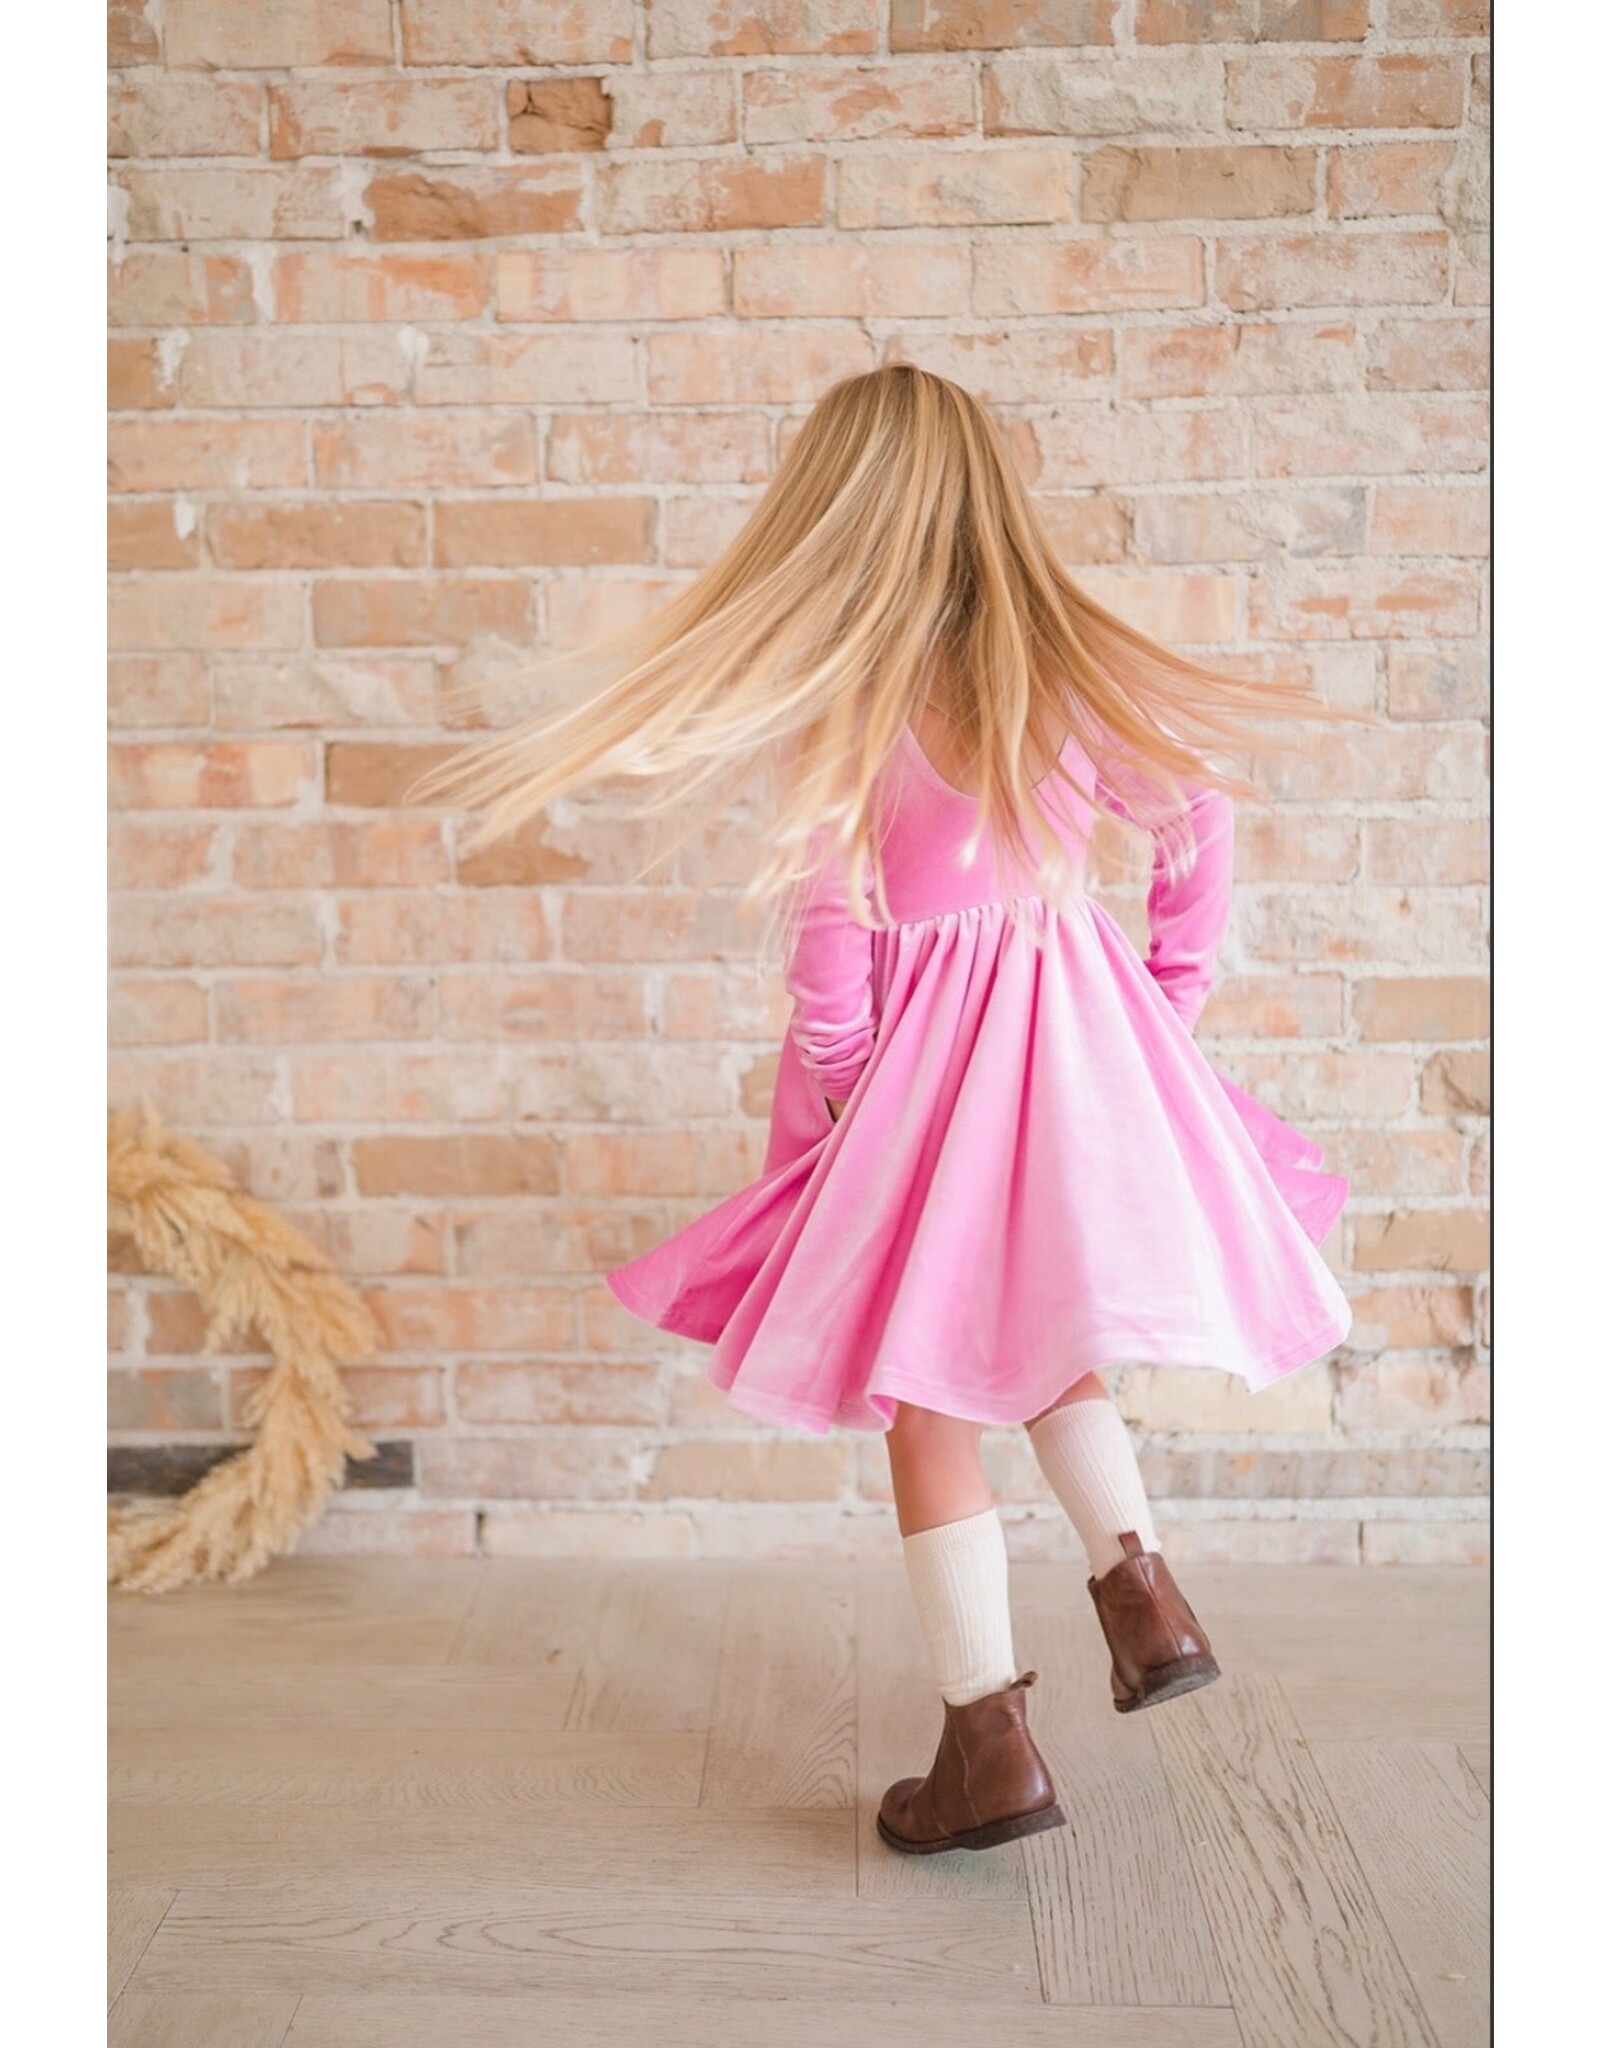 Ollie Jay Ollie Jay- Gwendolyn Dress in Baby Pink Velvet